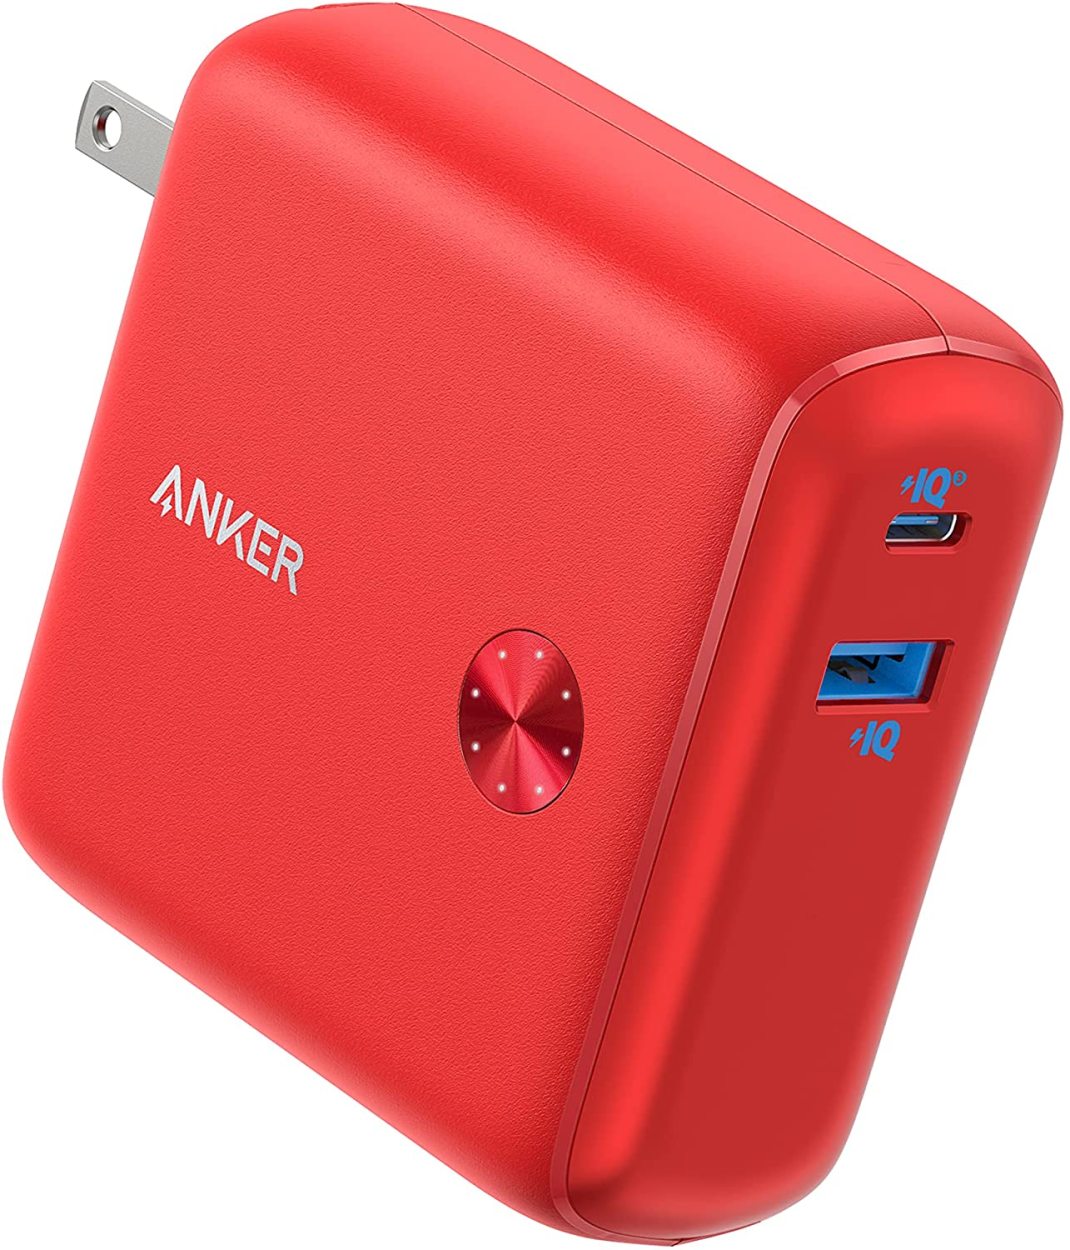 モバイルバッテリー Anker PowerCore Fusion 10000 (9700mAh 20W PD モバイルバッテリー搭載USB充電器)  USB Power Delivery対応 / PSE認証済 アンカー